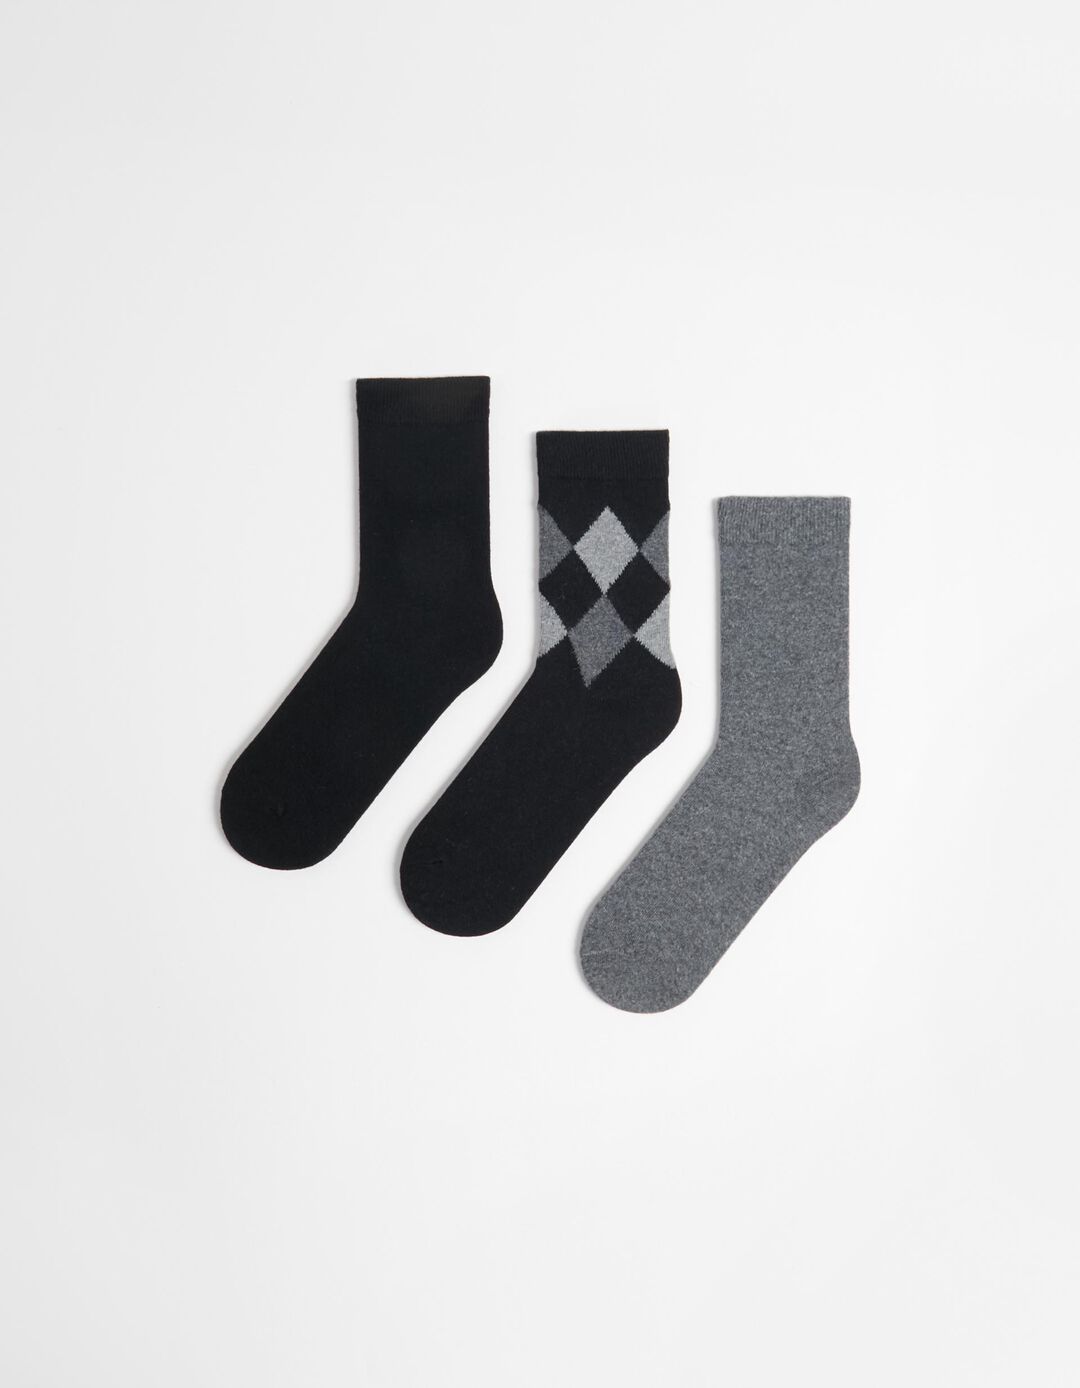 Pack 3 Pairs of Wool Blend Socks, Men, Black